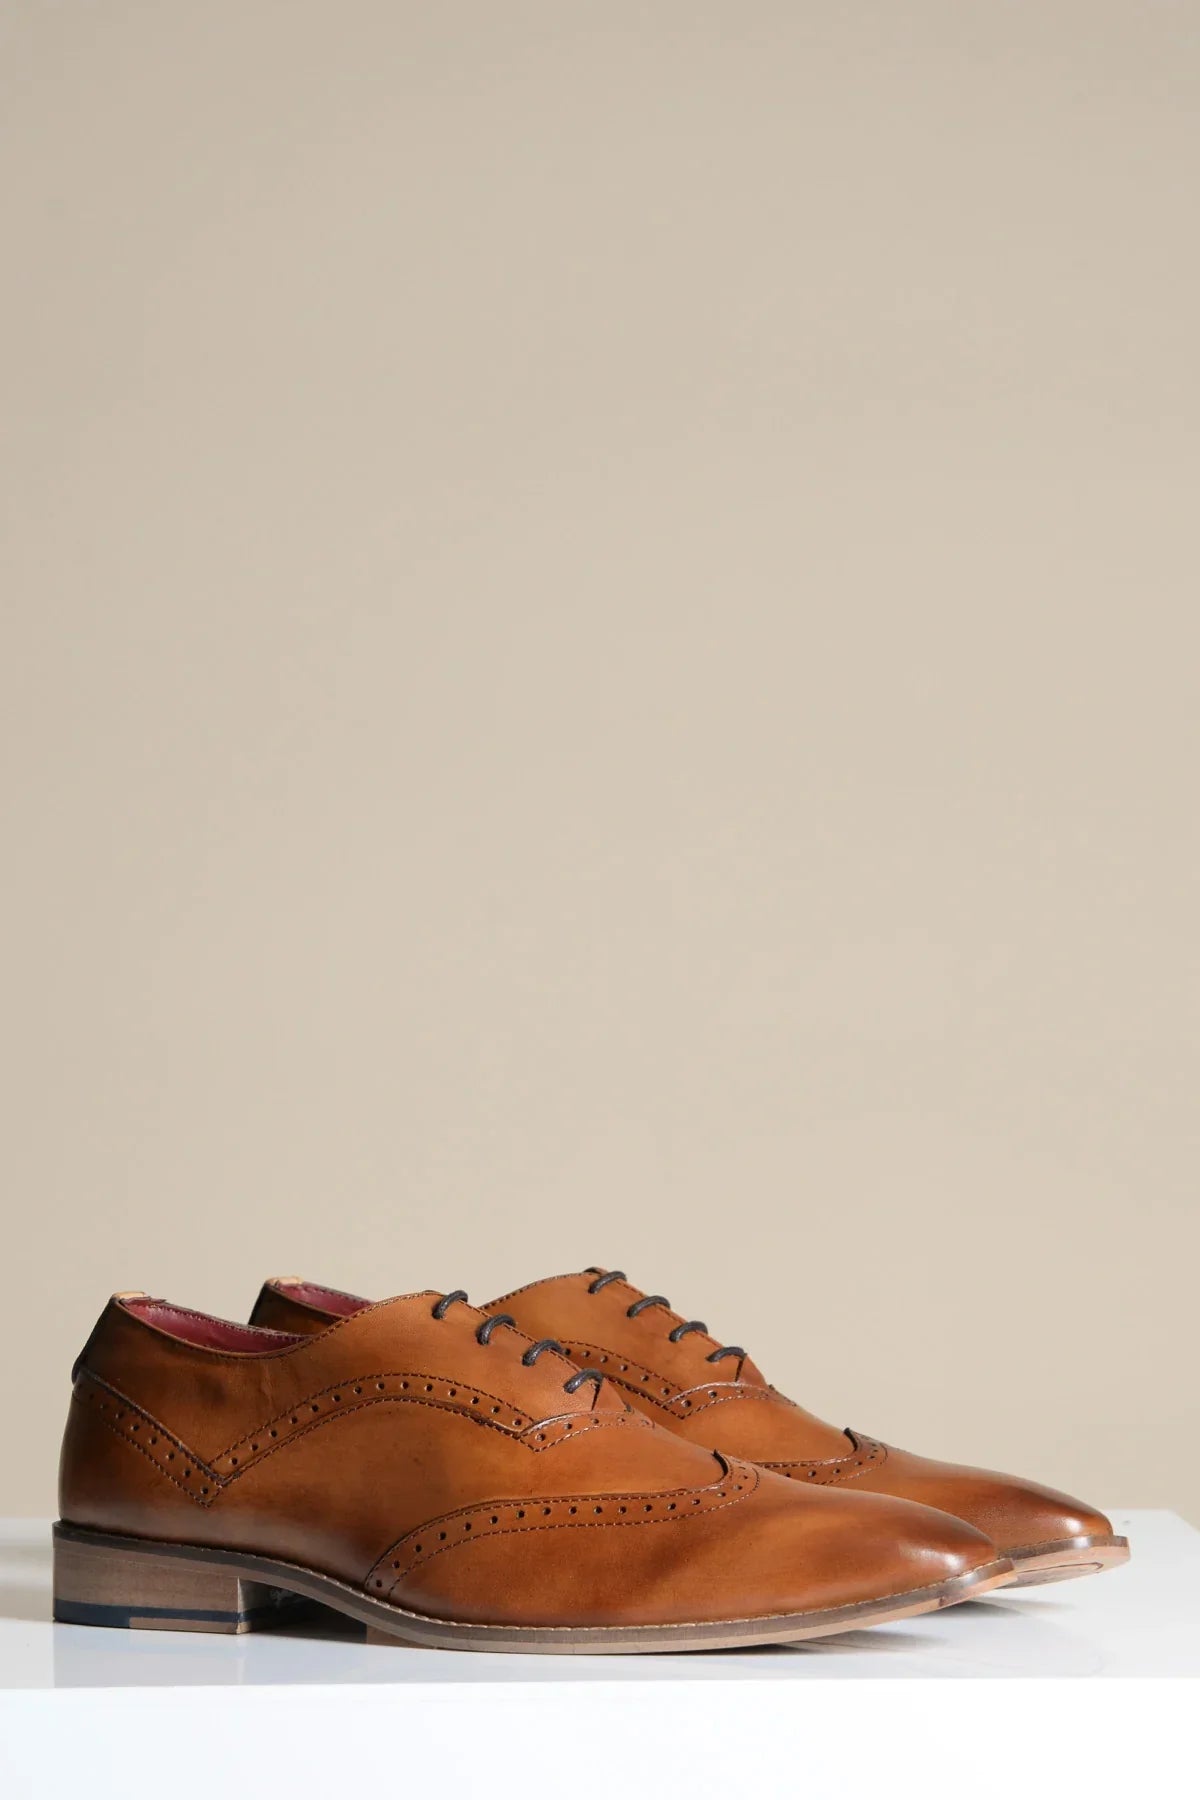 Hnedé kožené topánky, Marc Darcy Dawson - Wingtip brogue